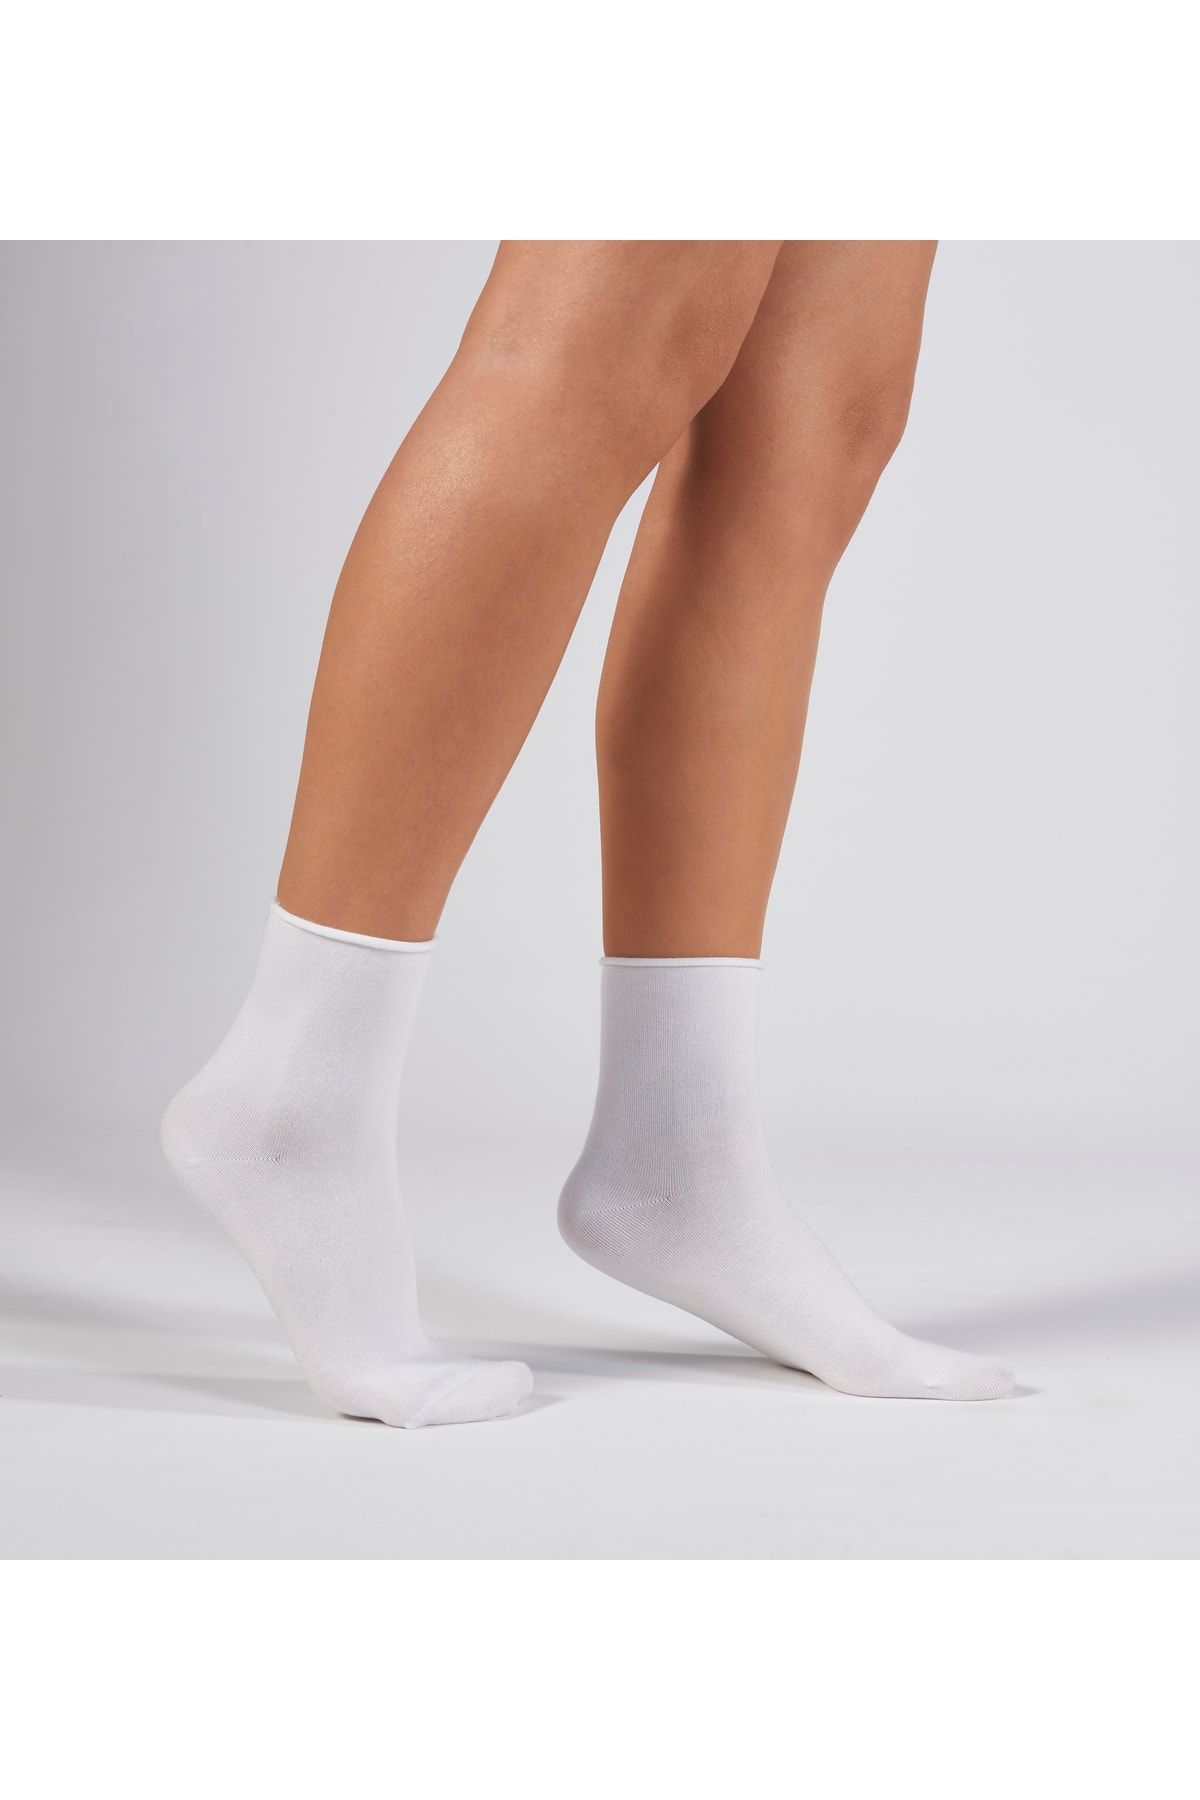 Forwena Beyaz Modal Lastiksiz Dikişsiz Kadın Quarter Yarım Soket Çorap